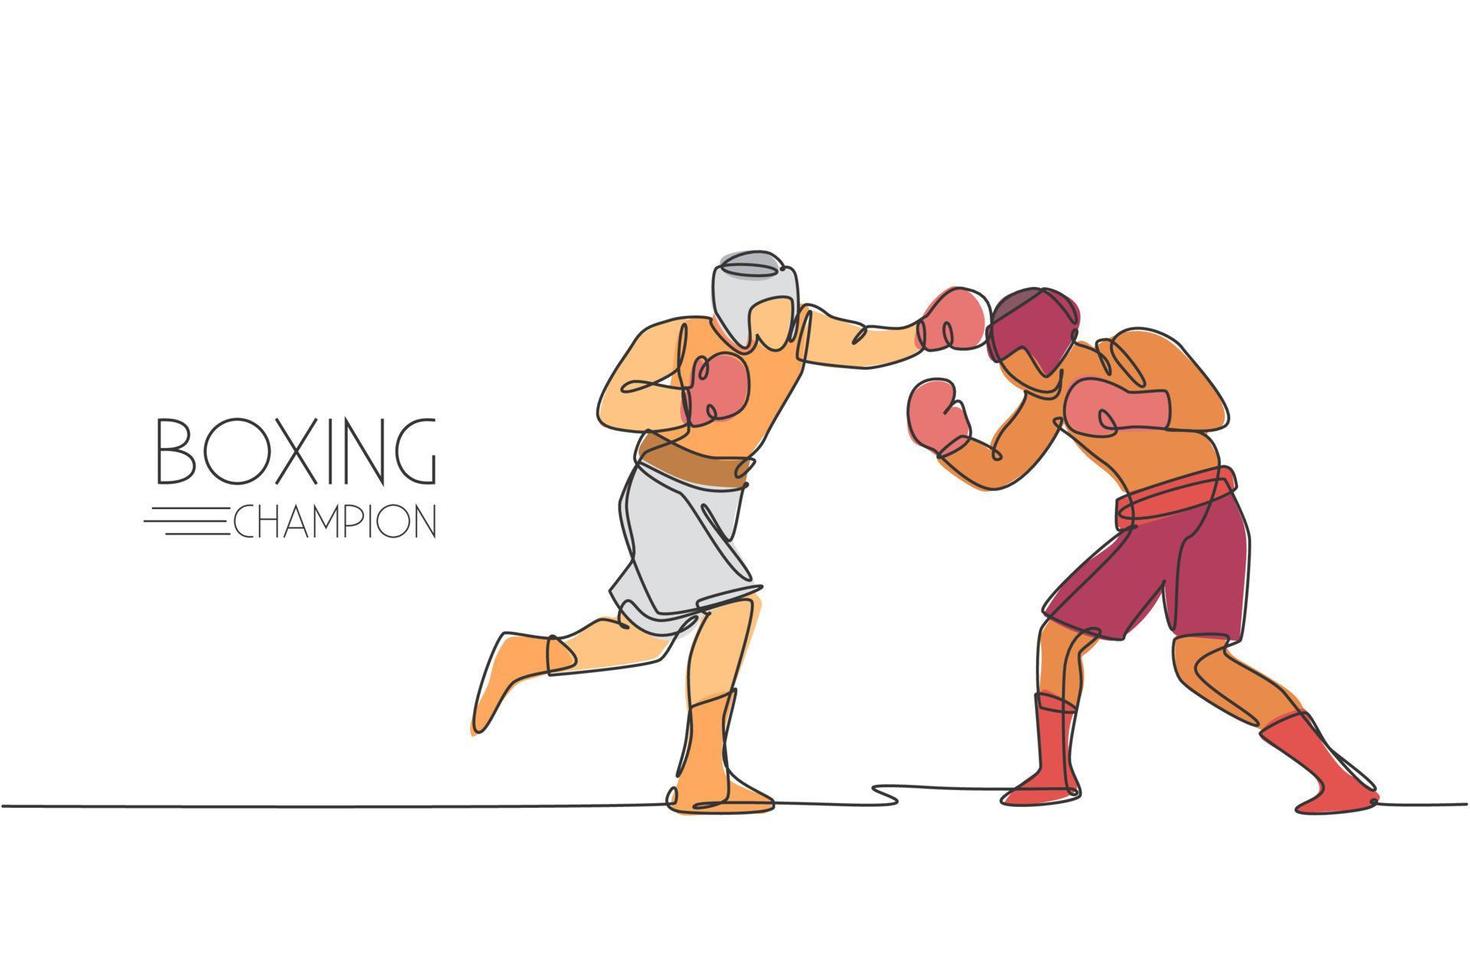 eine durchgehende Strichzeichnung von zwei jungen sportlichen Boxern zeigt einen spannenden Kampf. Konzept des Wettkampfkampfsports. dynamische Single-Line-Draw-Design-Vektorillustration für Boxkampf-Werbeplakat vektor